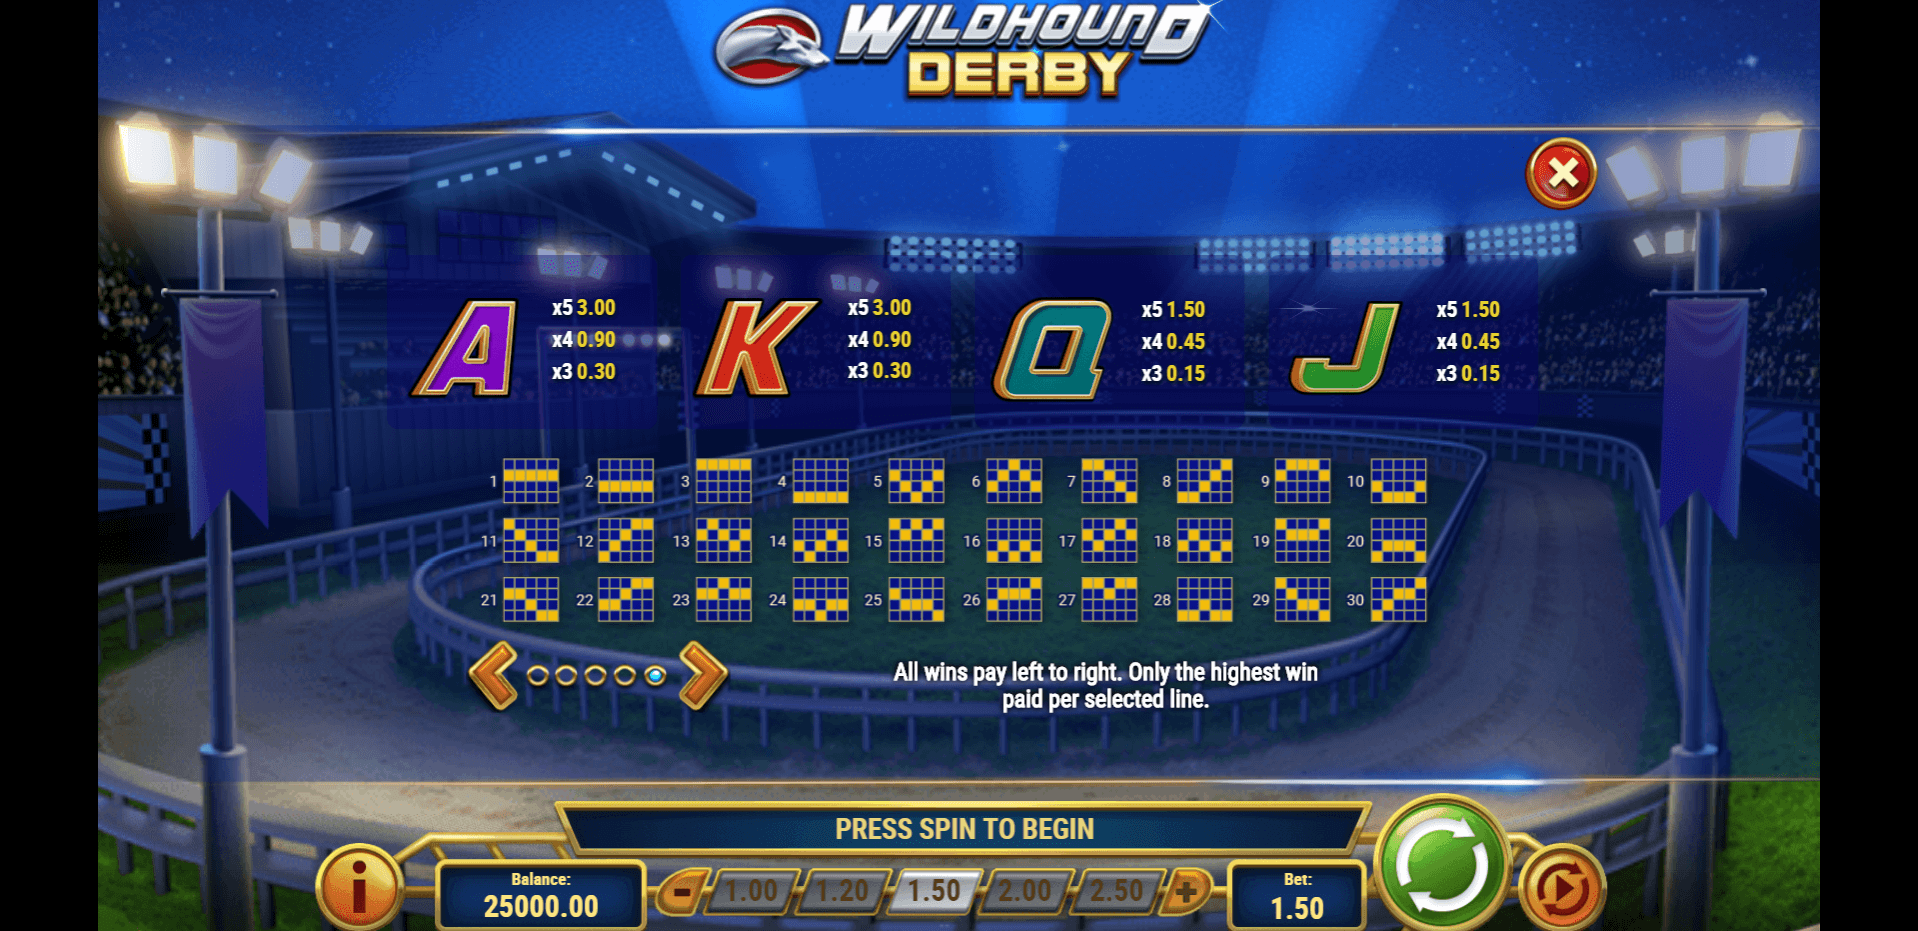 wildhound derby slot machine detail image 4